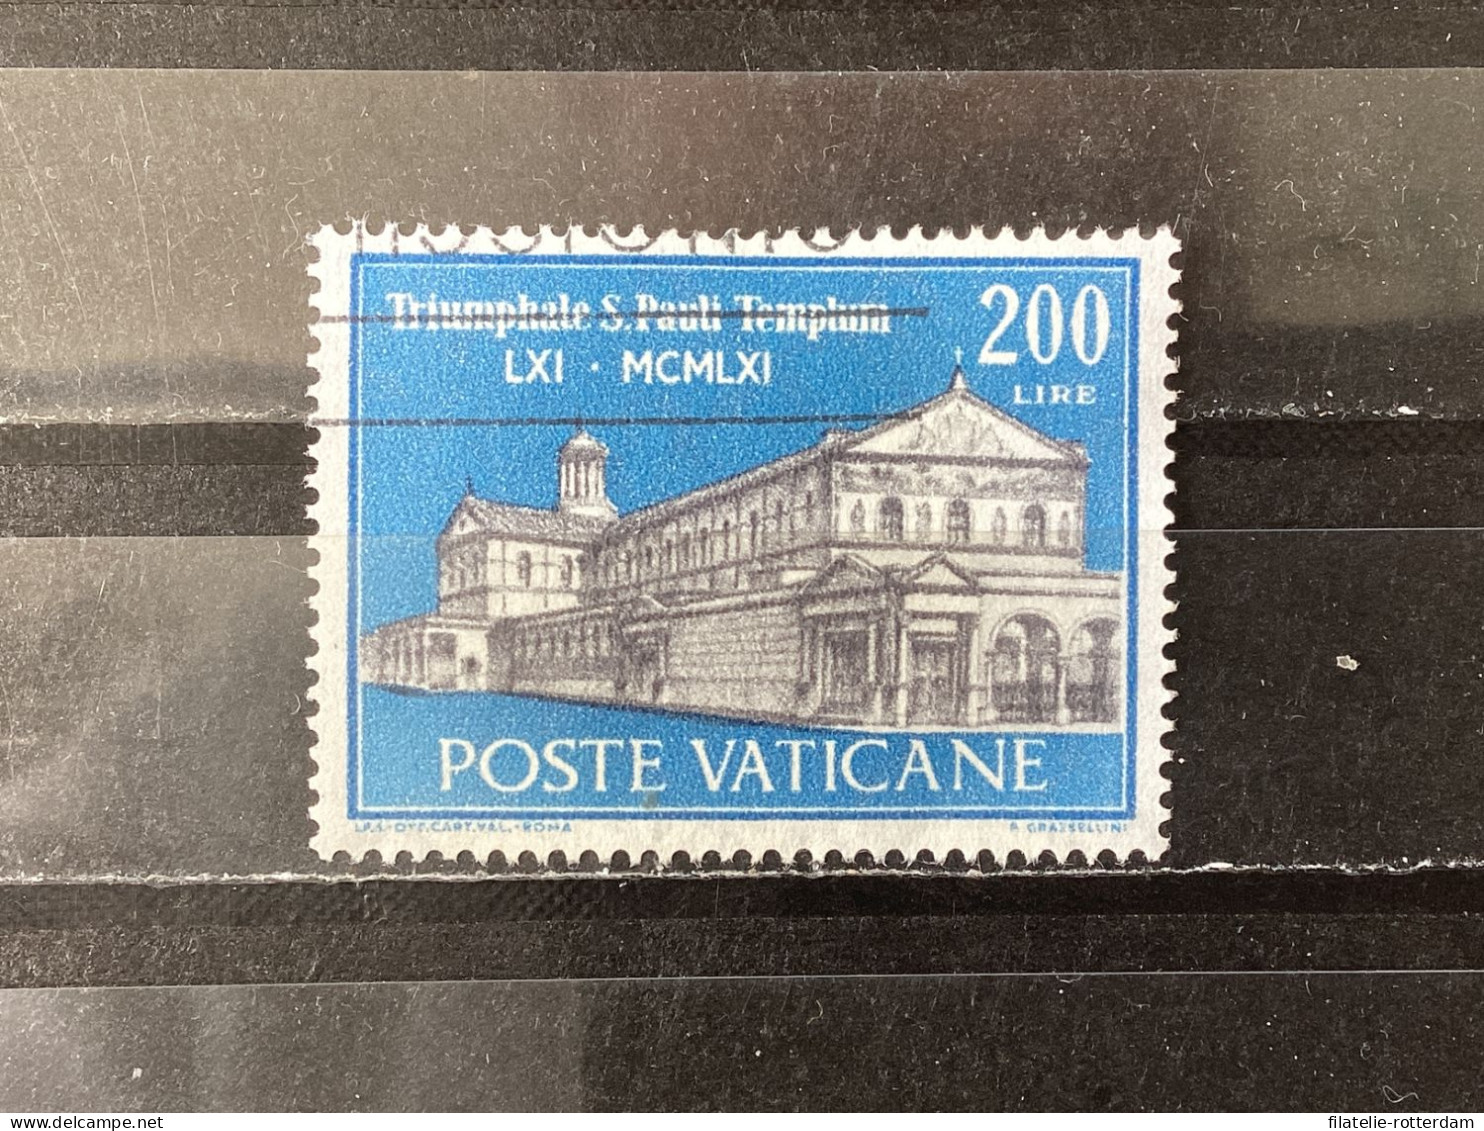 Vatican City / Vaticaanstad - Sct. Paul In Rome (200) 1961 - Gebruikt